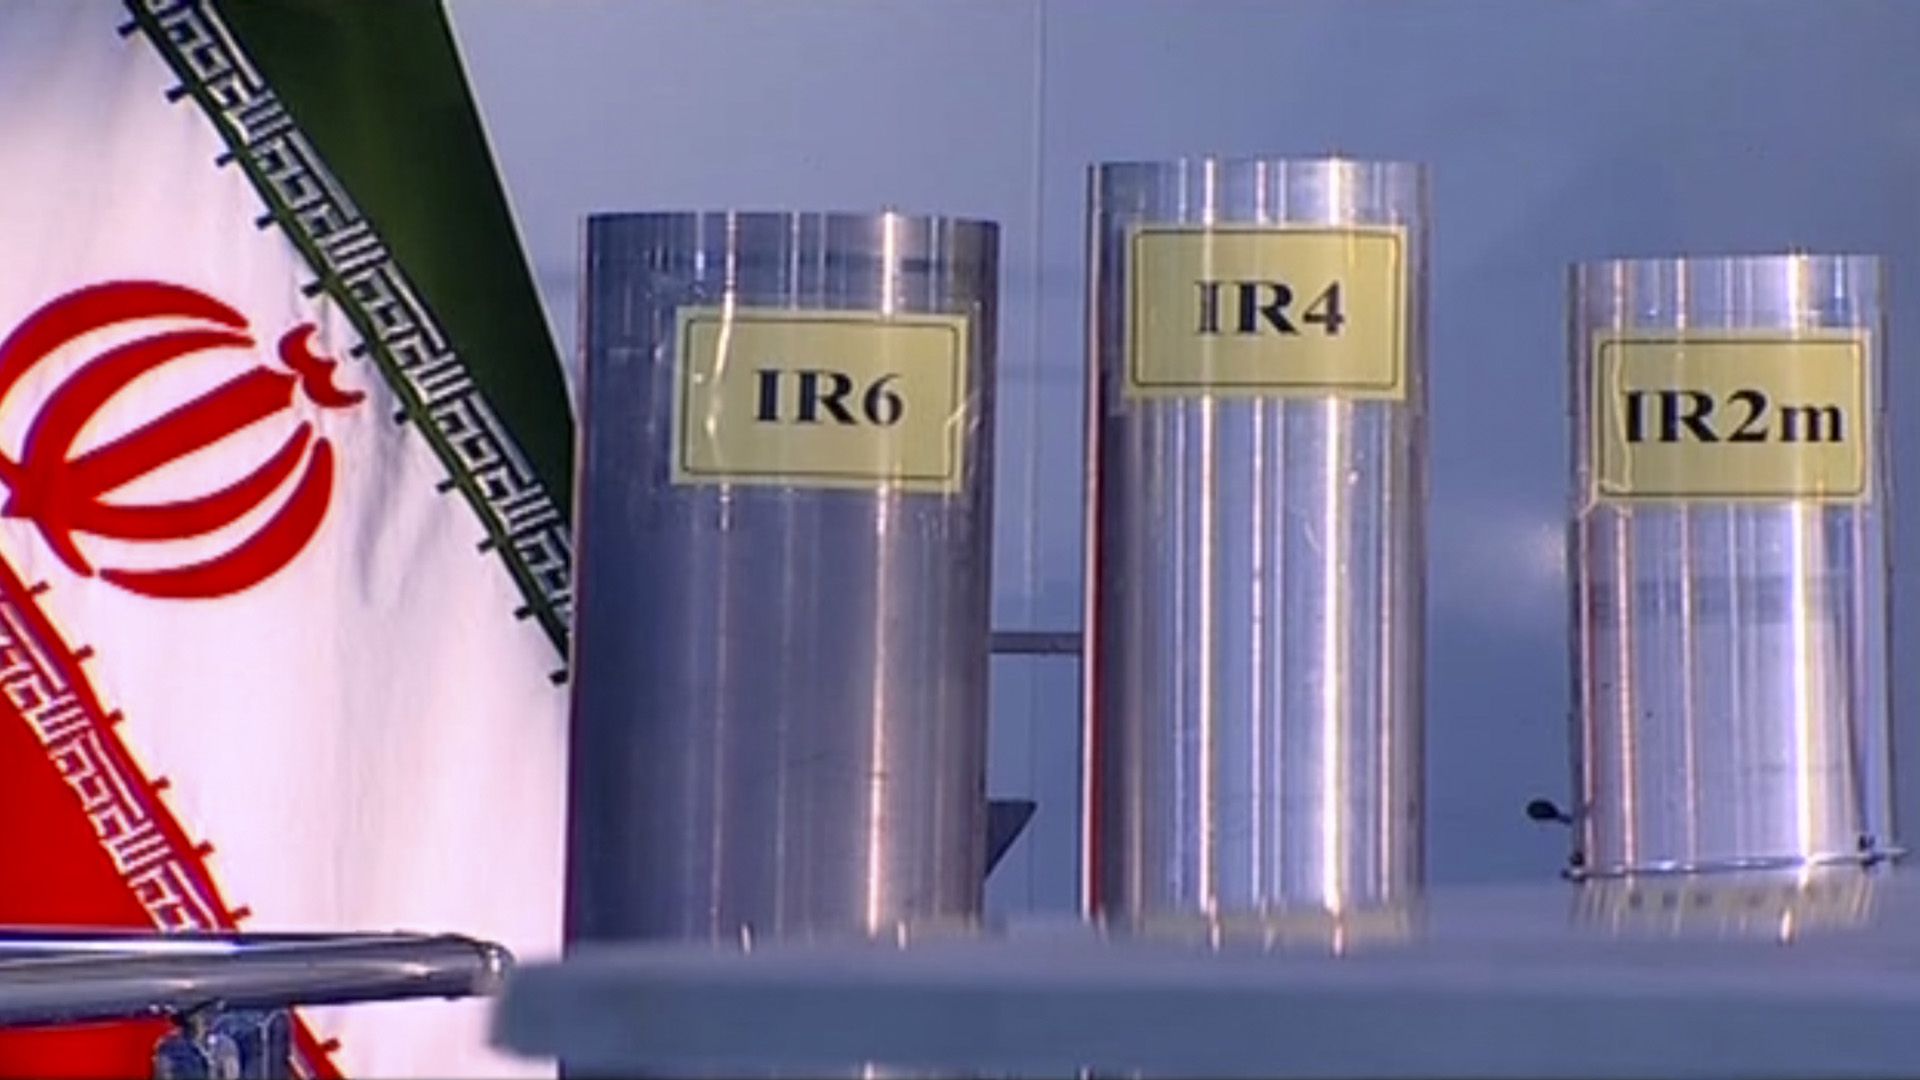 Centrífugas utilizadas por Irán en el enriquecimiento de uranio